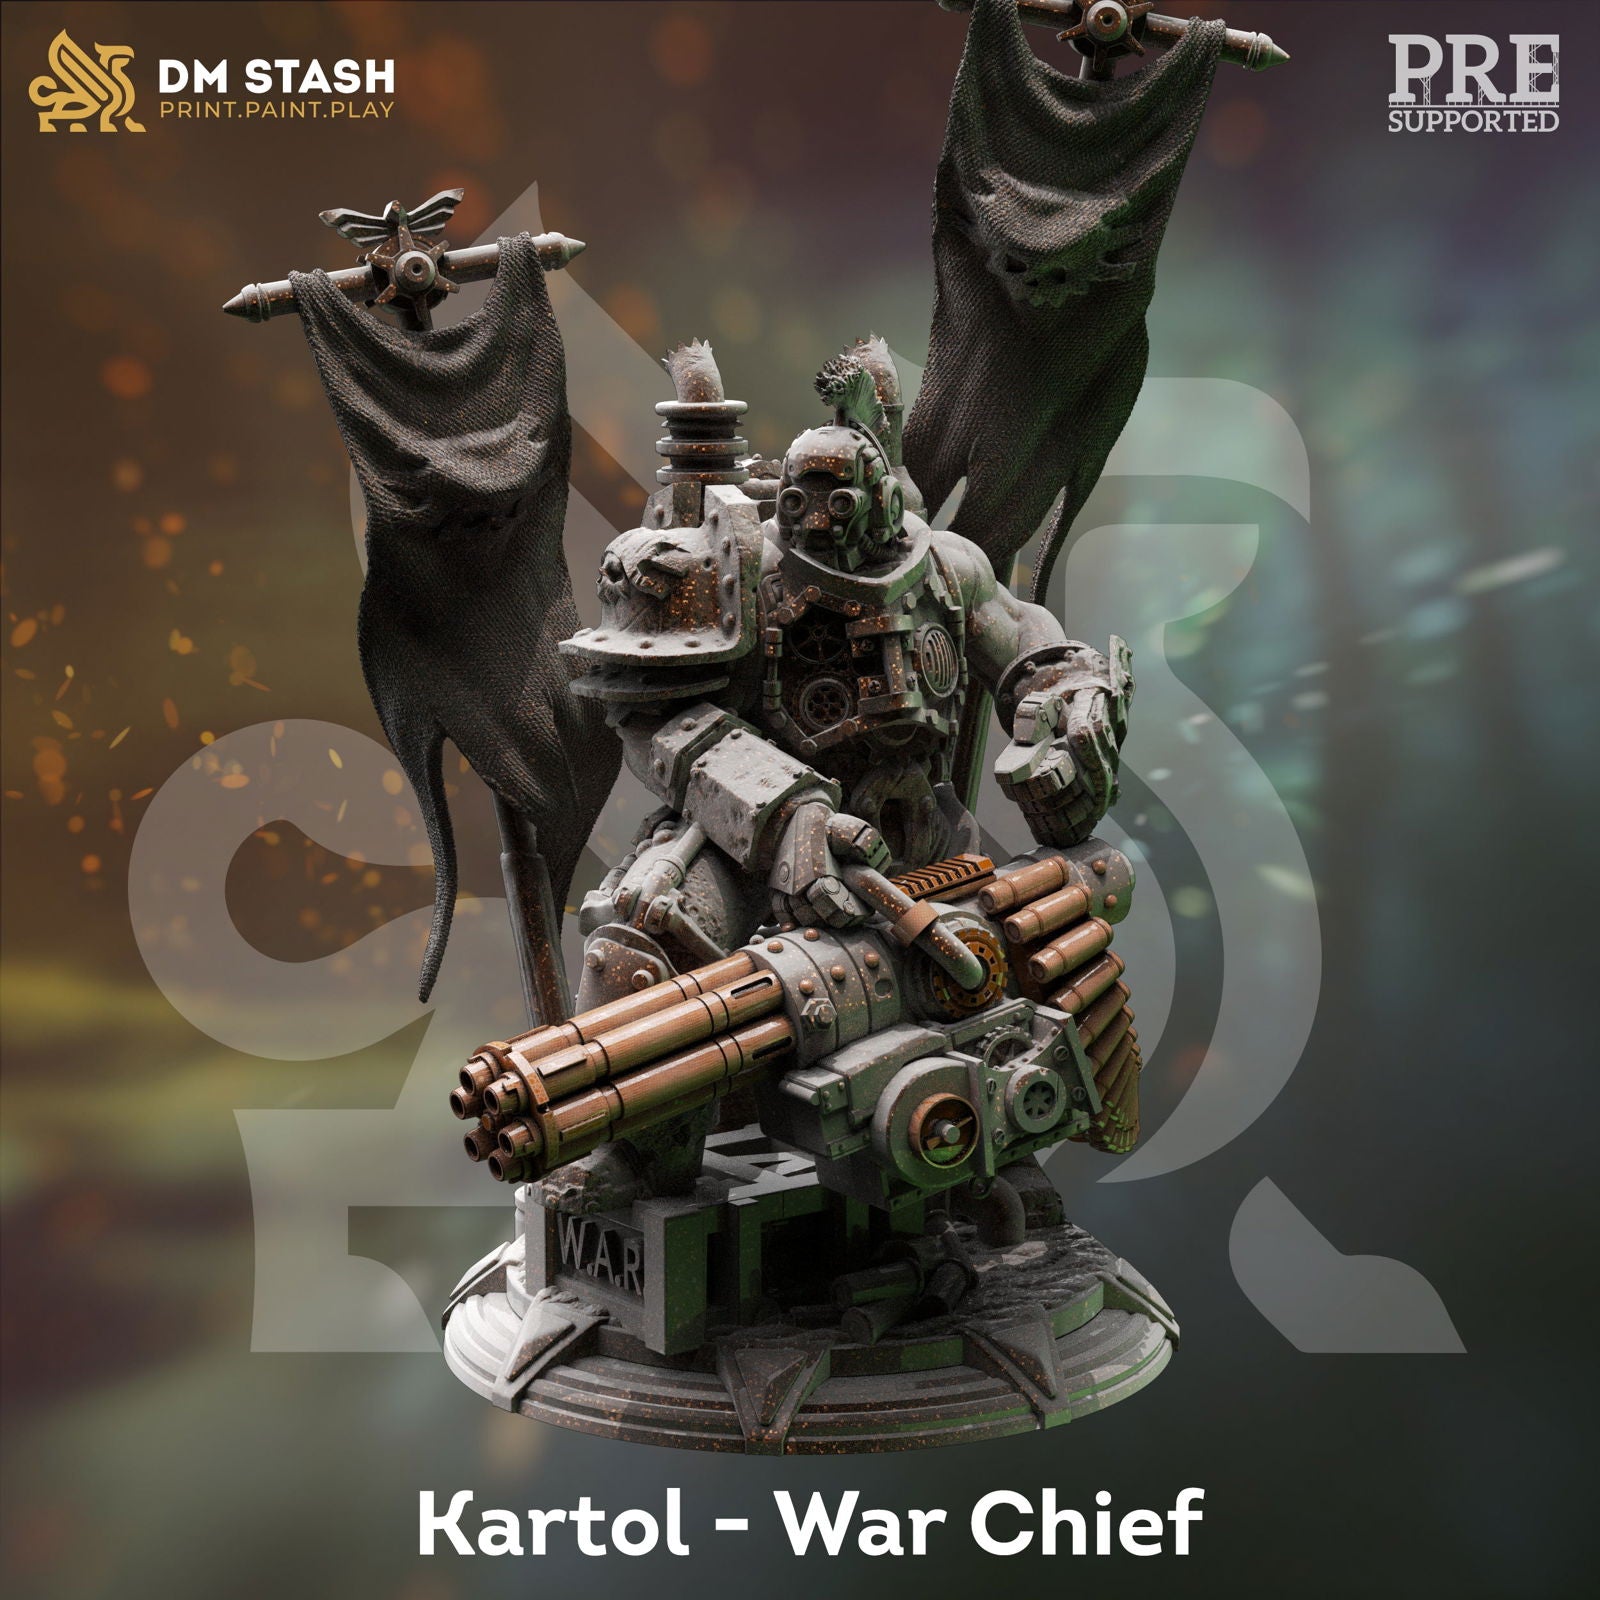 Kartol - War Chief - The Printable Dragon